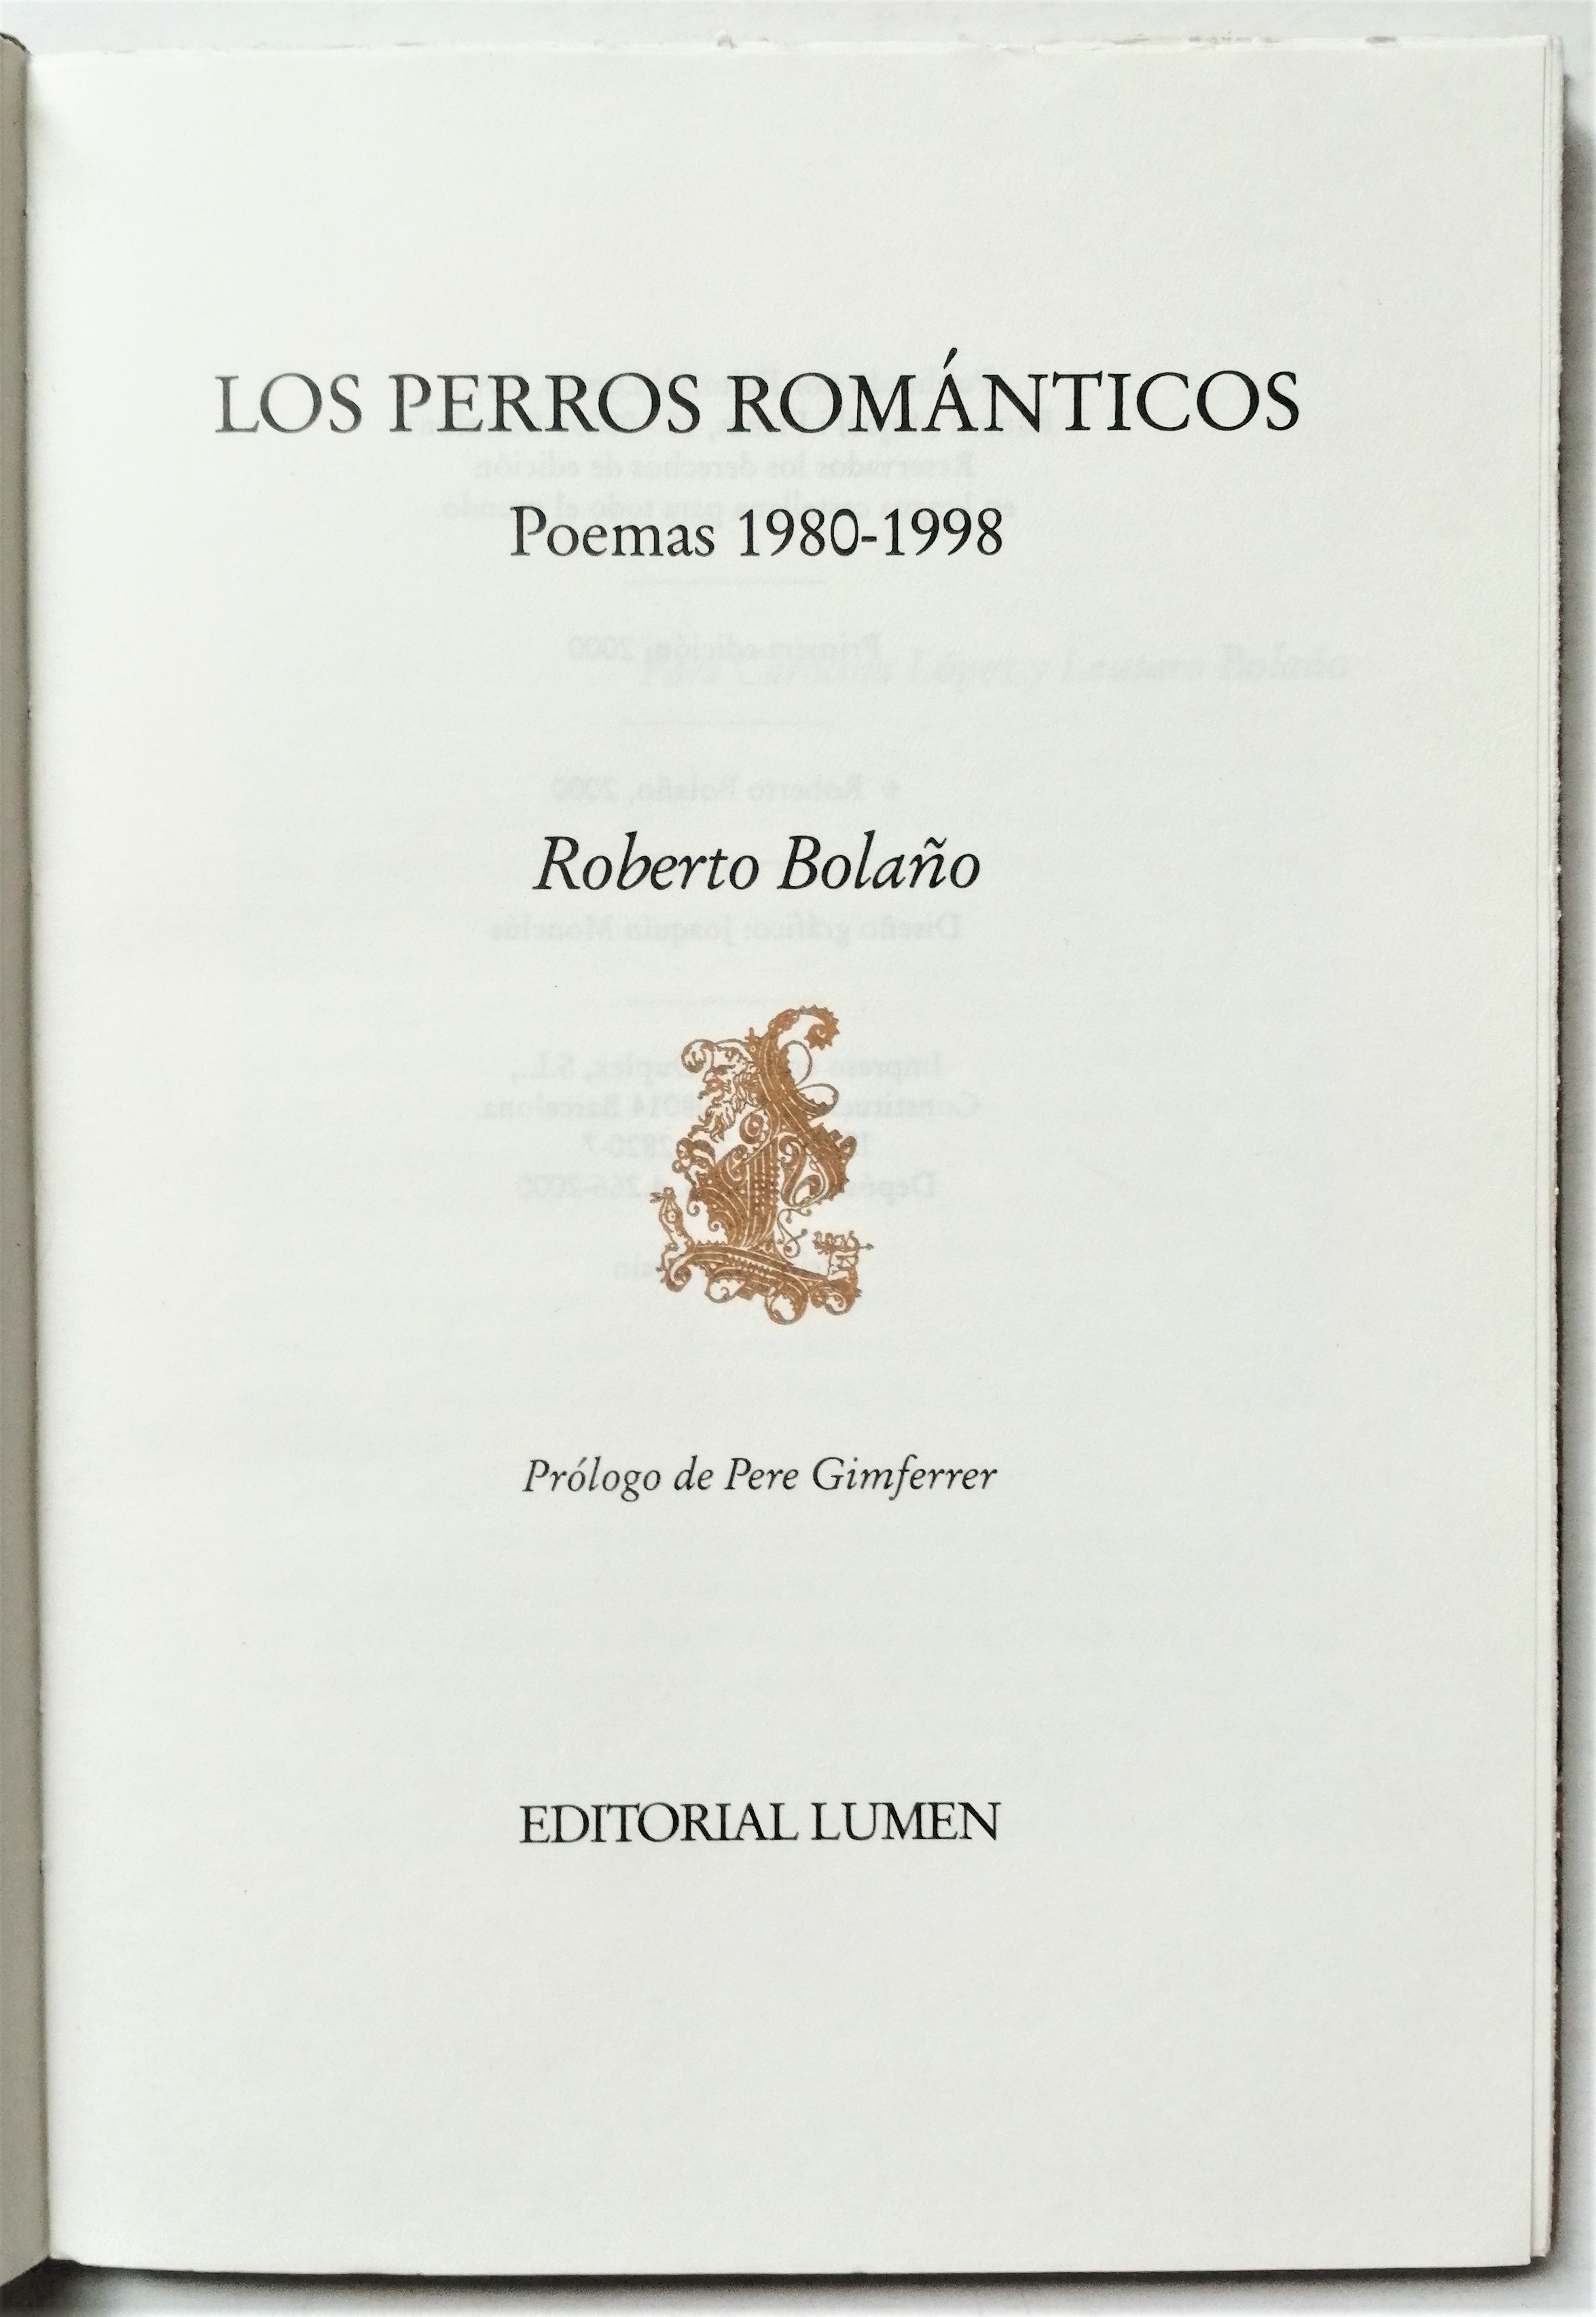 Roberto Bolaño - Los perros románticos